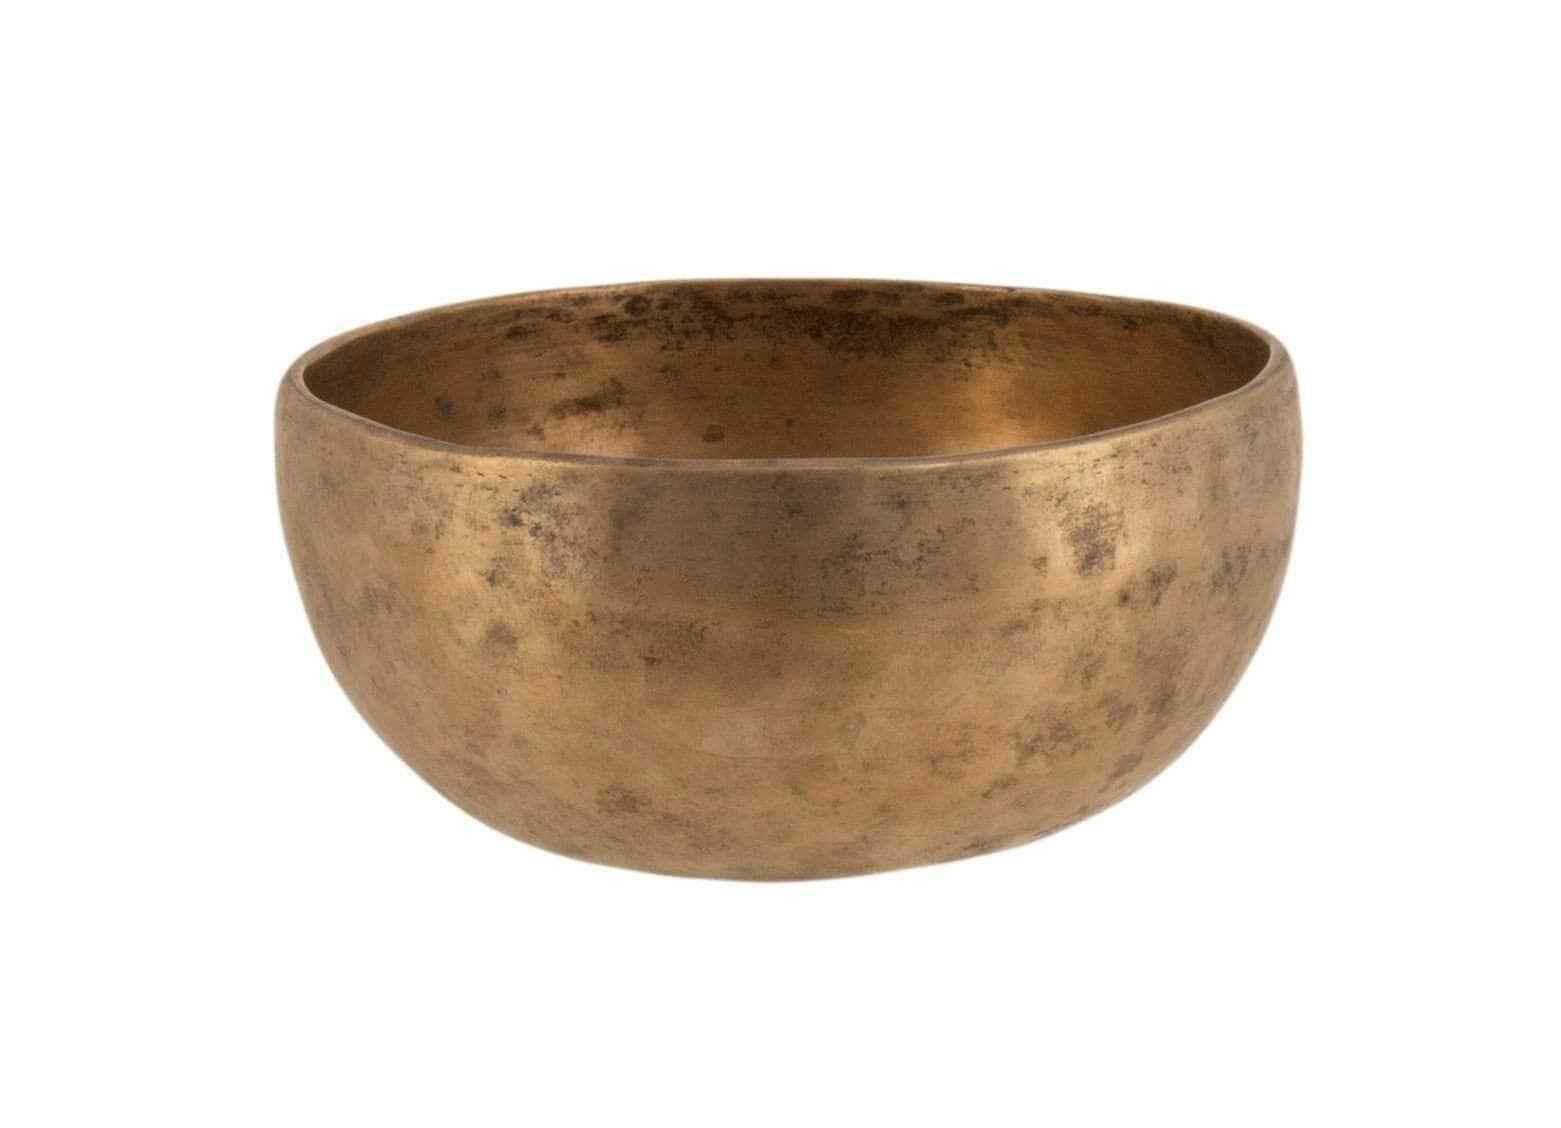 Antique Singing Bowl Thadobati Tc245 7.1/8”x3.1/2” (18x8.7cm)